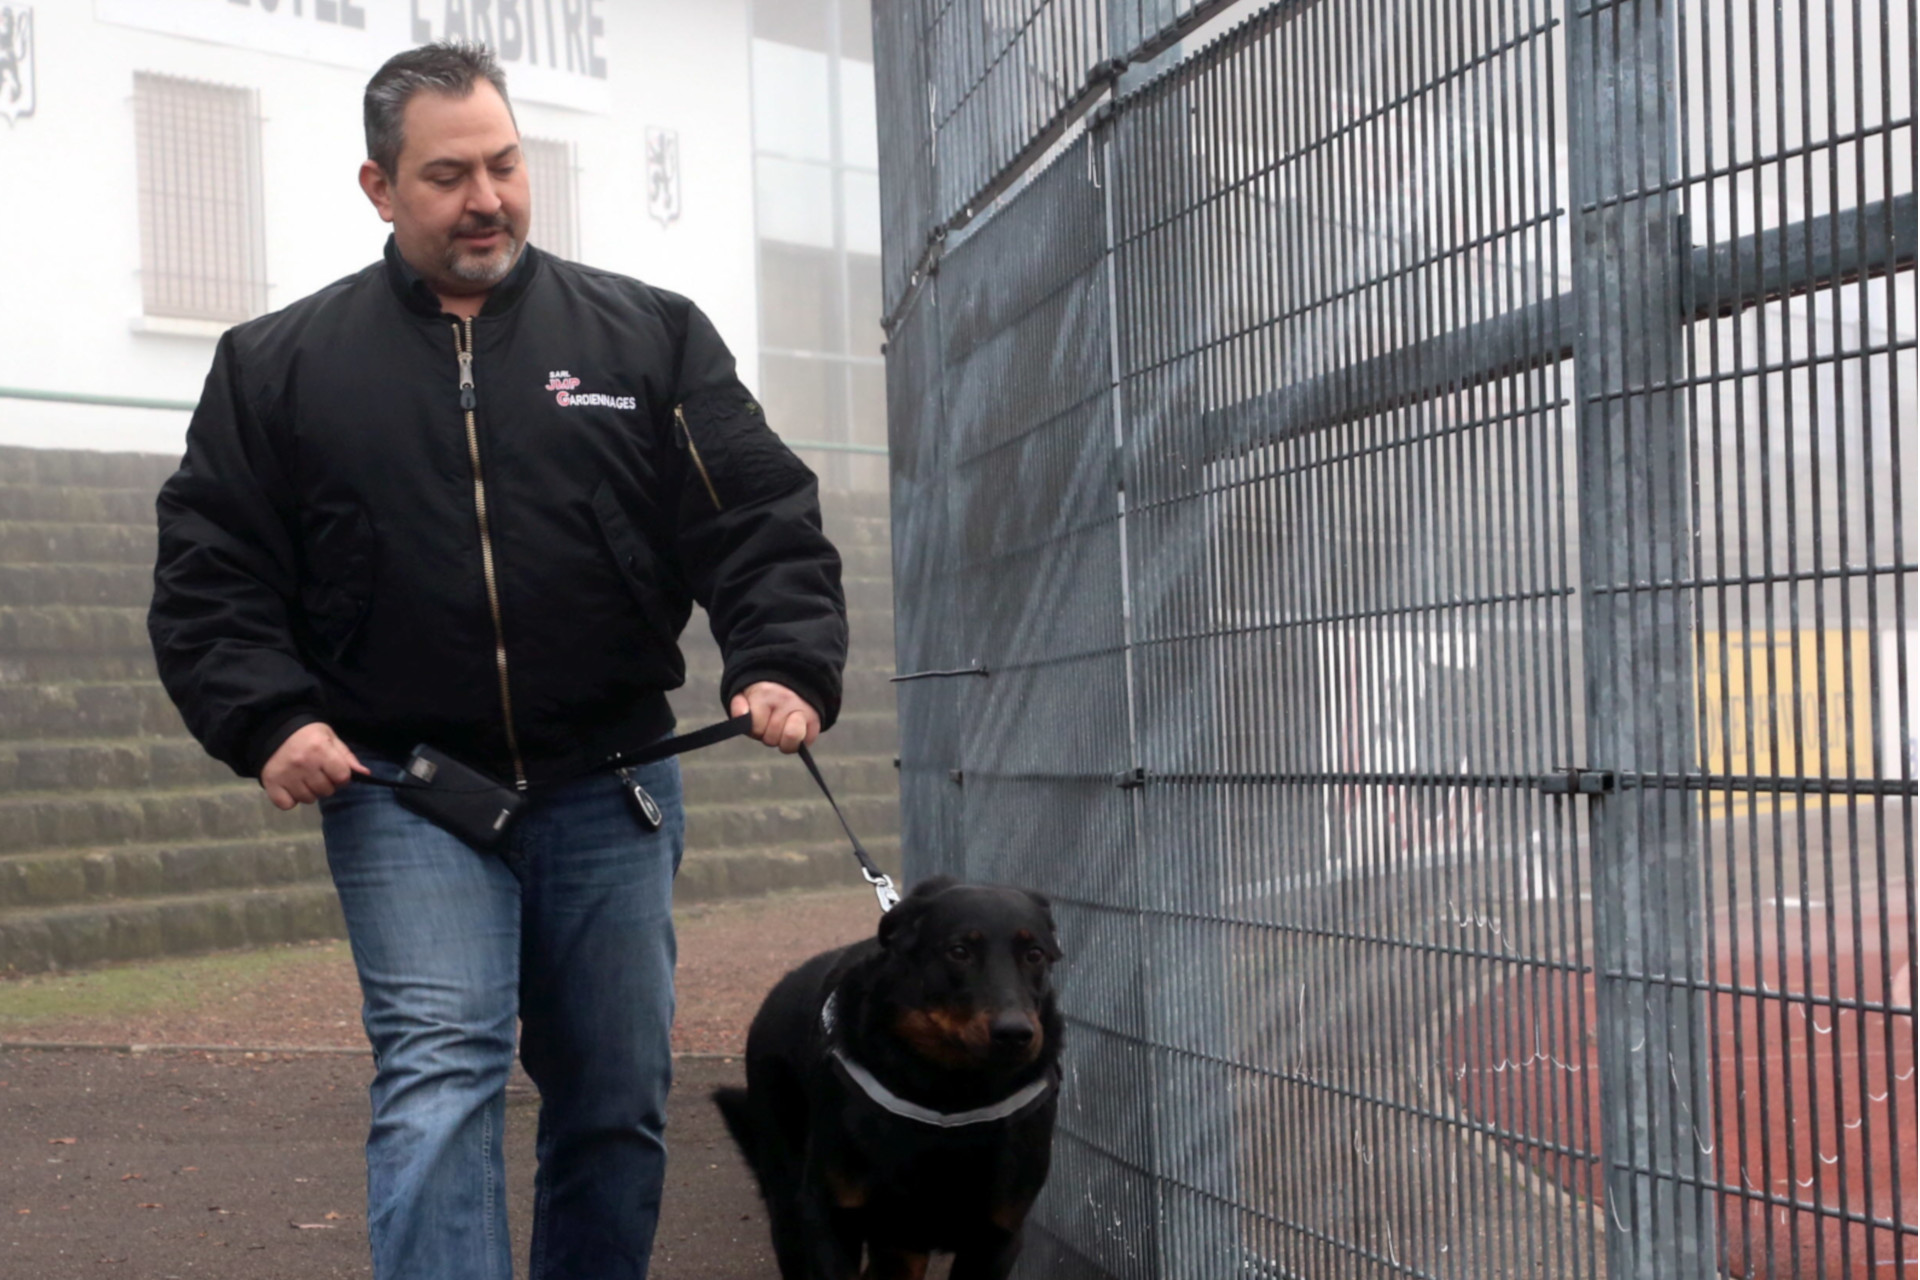 Group JMP spécialiste de la sécurité en Moselle, Alsace propose des formations aux agents de sécurité et obtention d'un diplôme professionnel. Des spécialisations pour les maîtres chiens sont prodiguées.